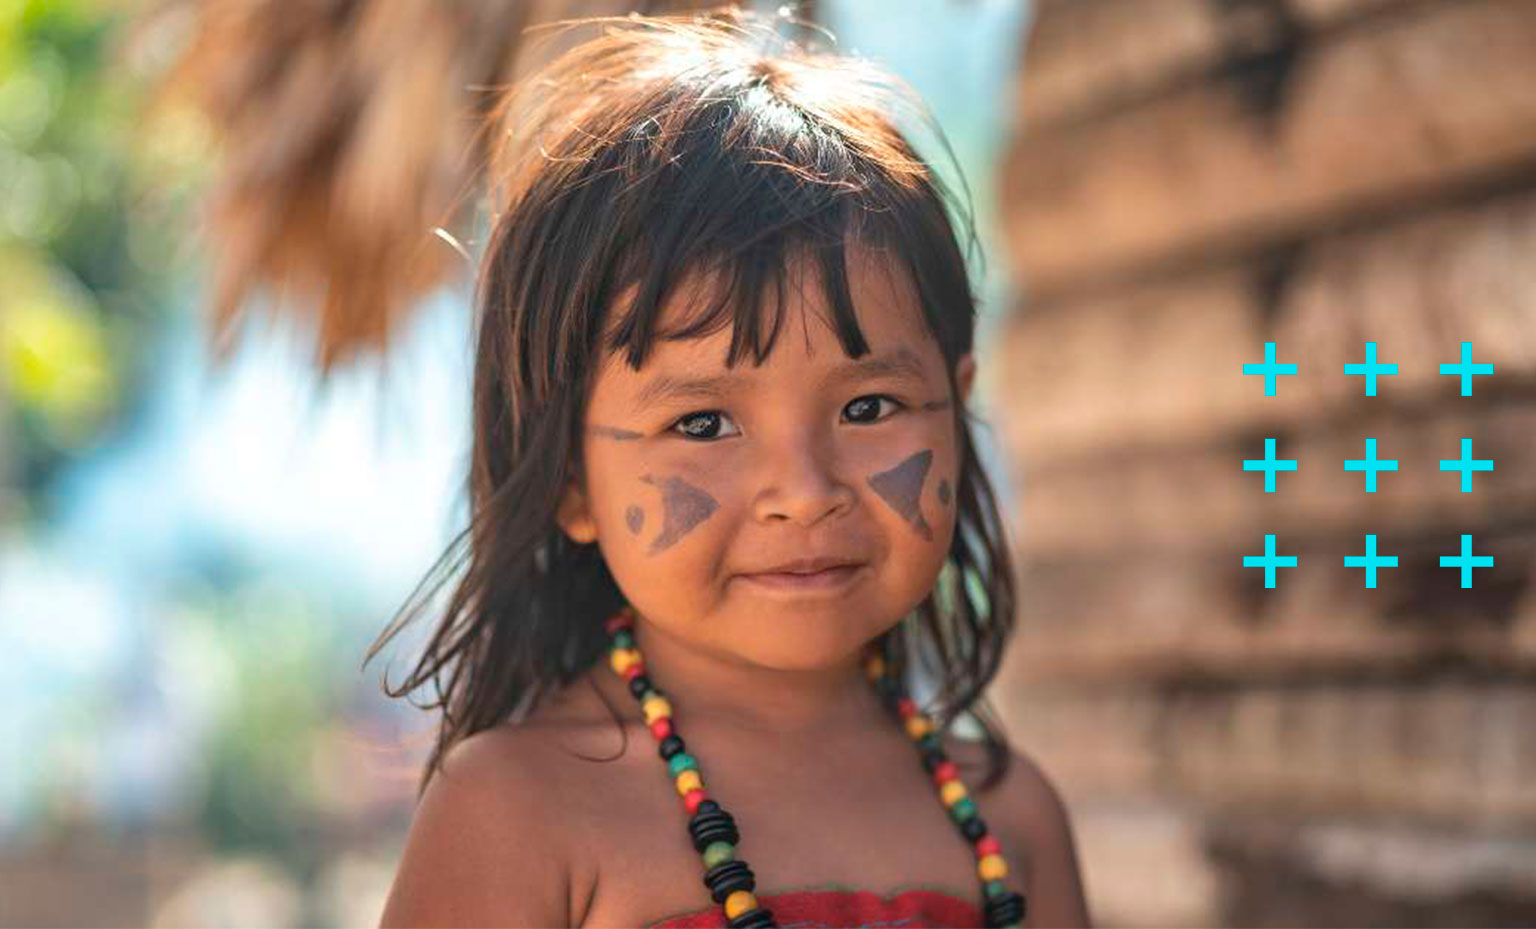 Criança indígena sorri para a foto.